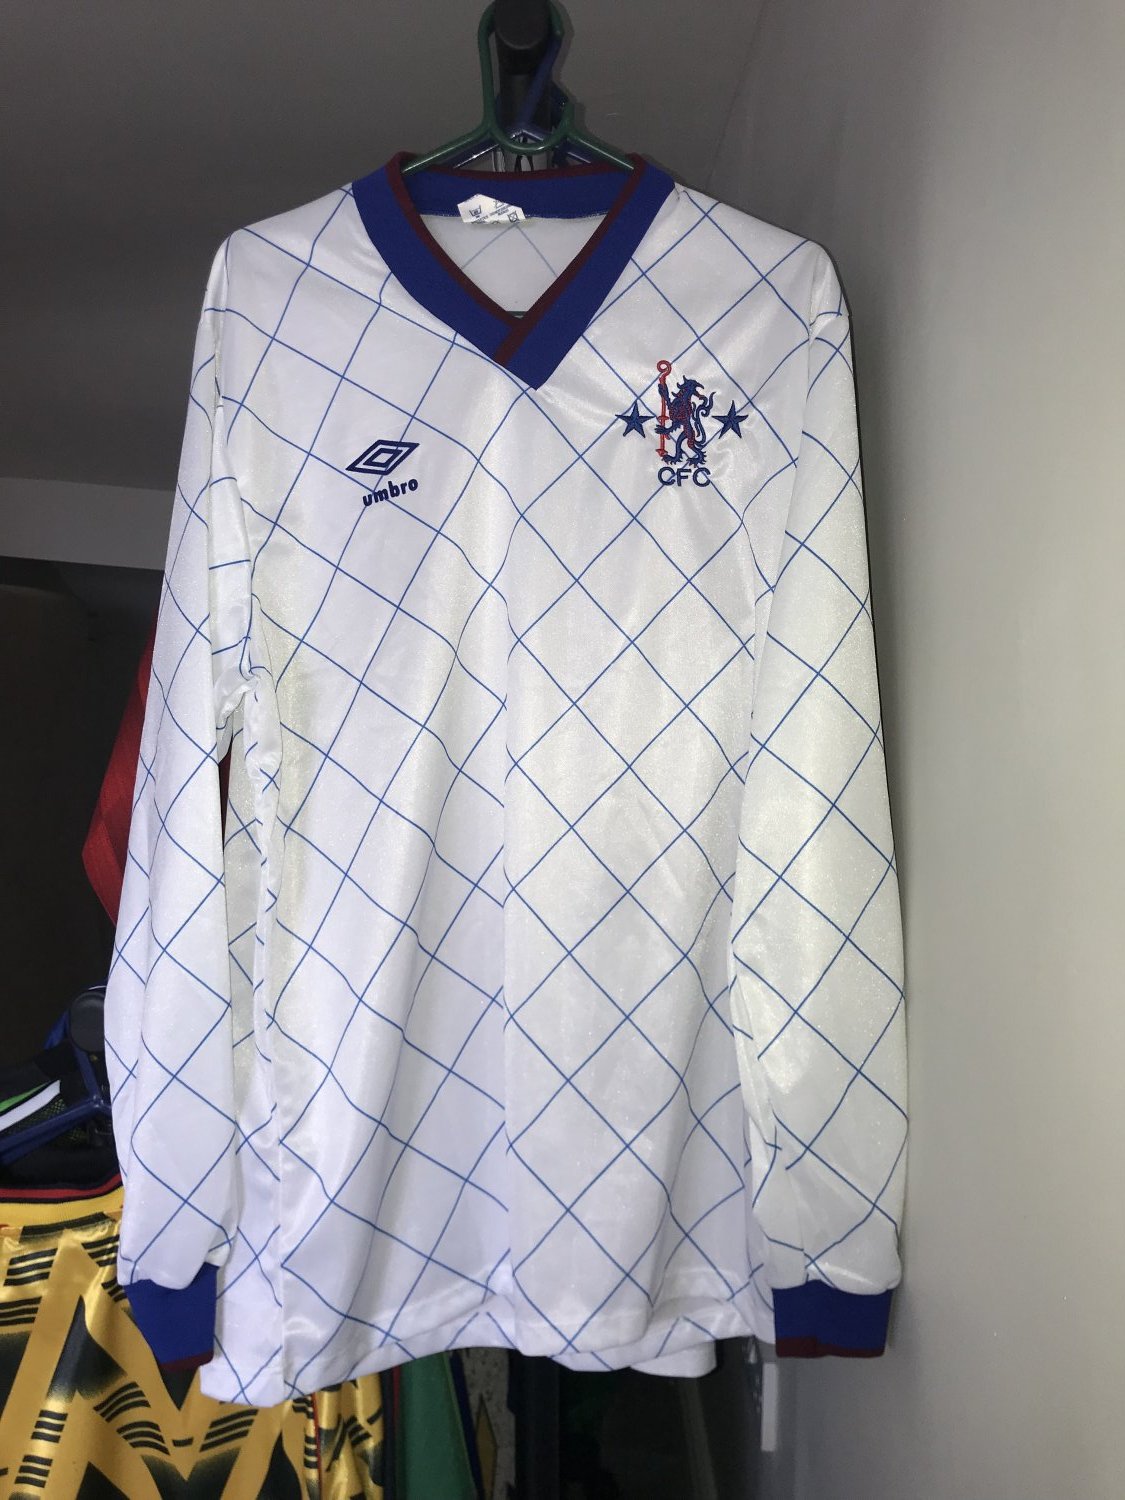 Chelsea Speciale maglia di calcio 1980 - 1982.